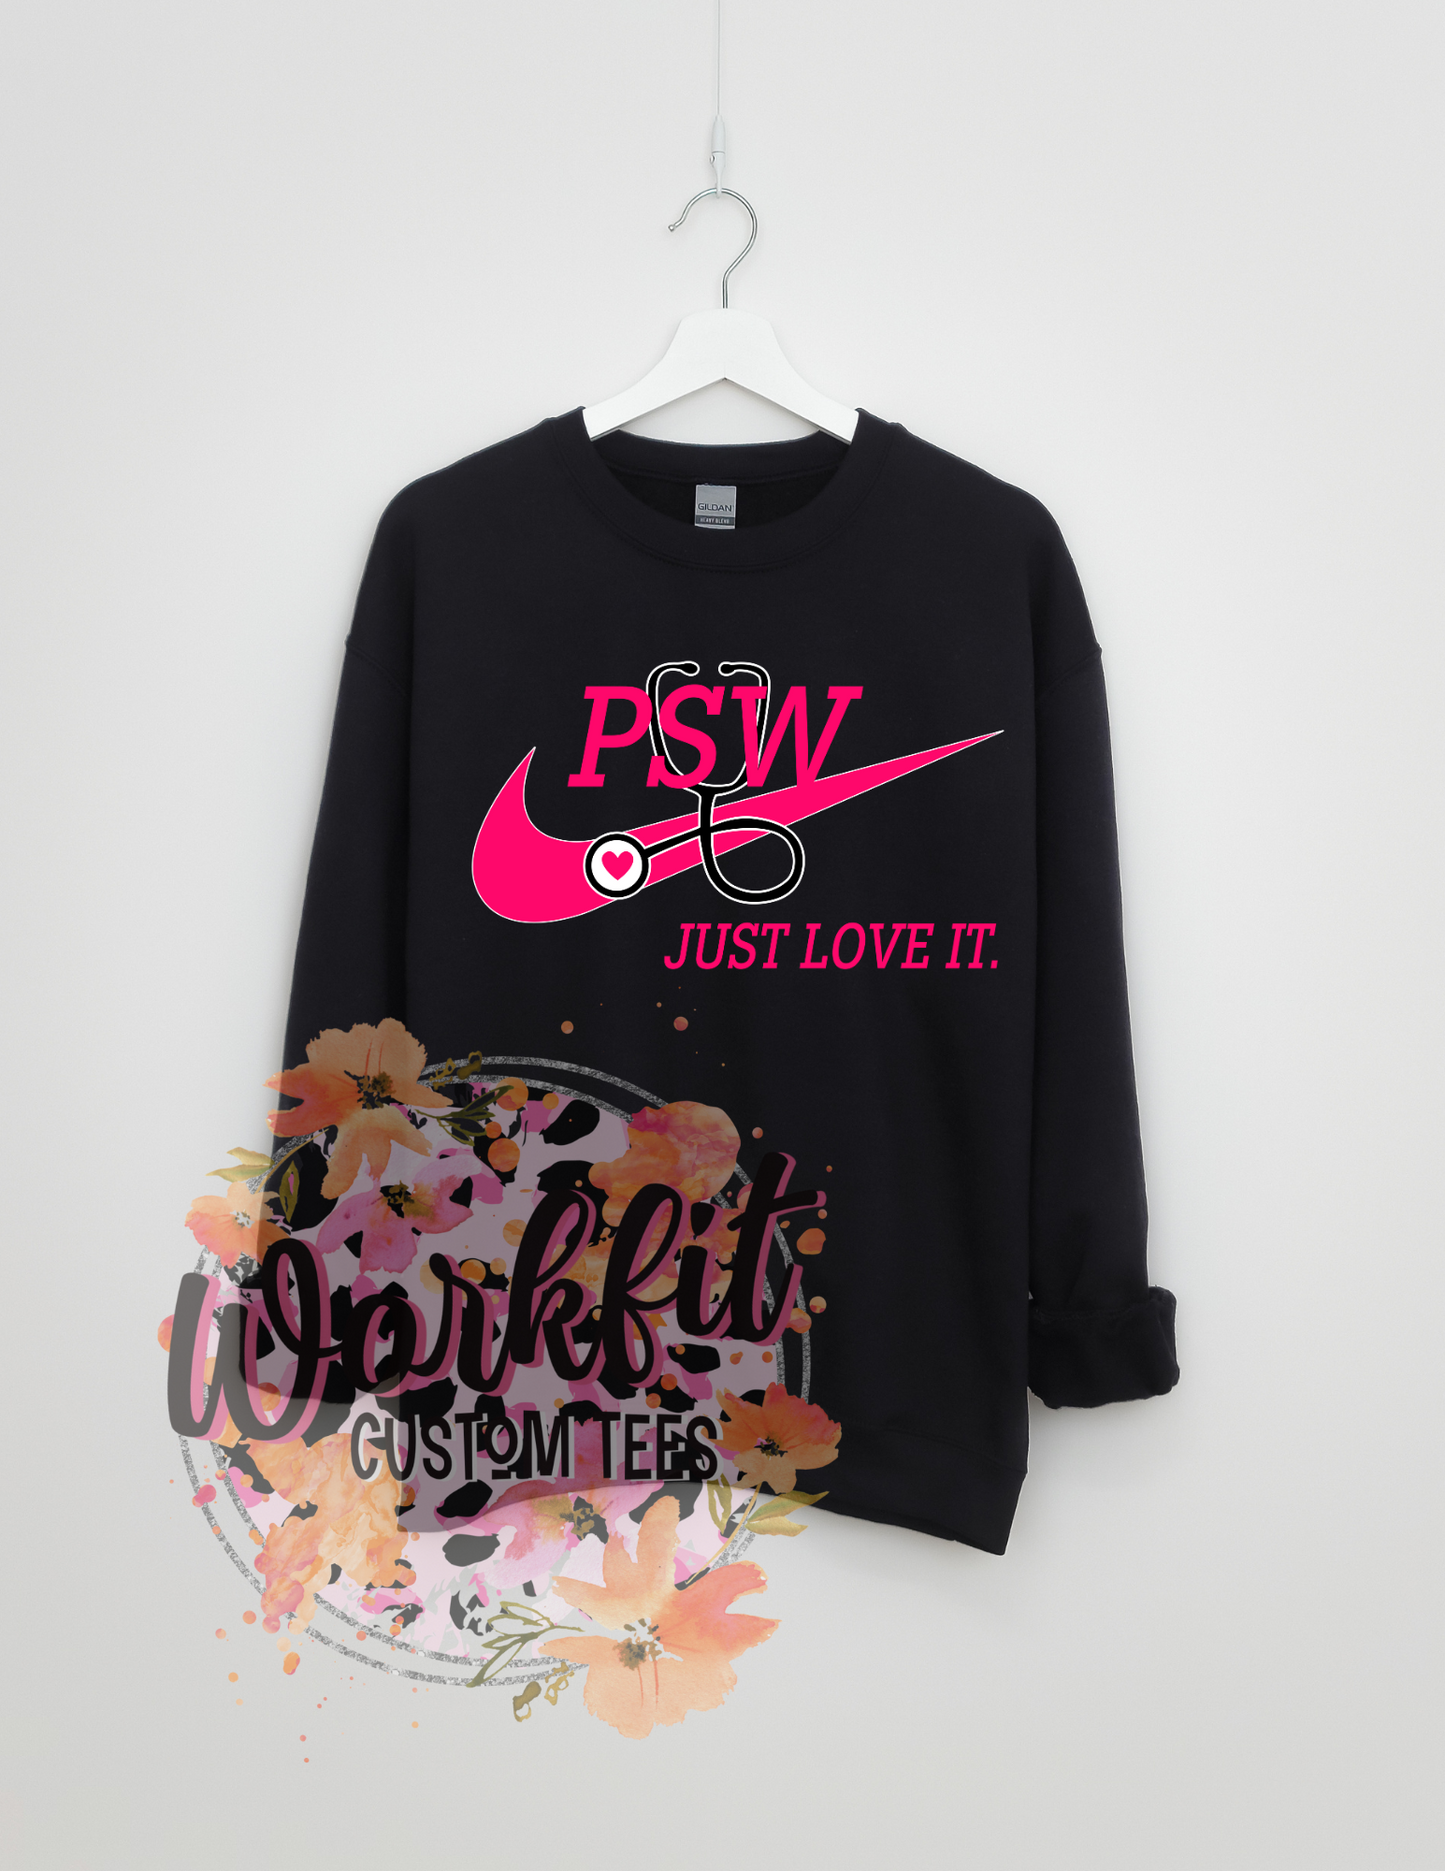 PSW- Just Love it Crewneck